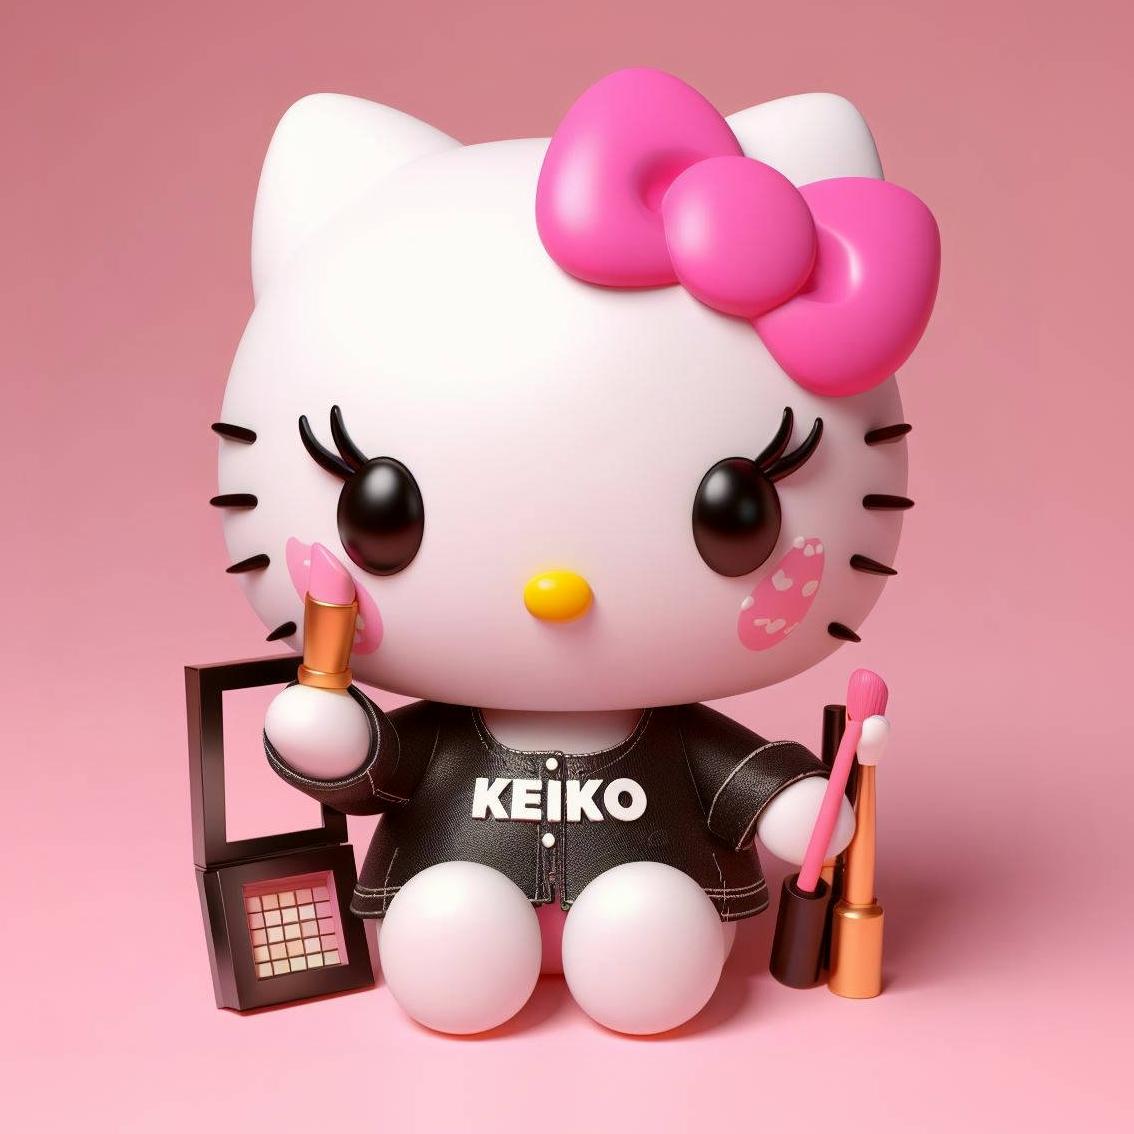 Keiko's Makeup's images